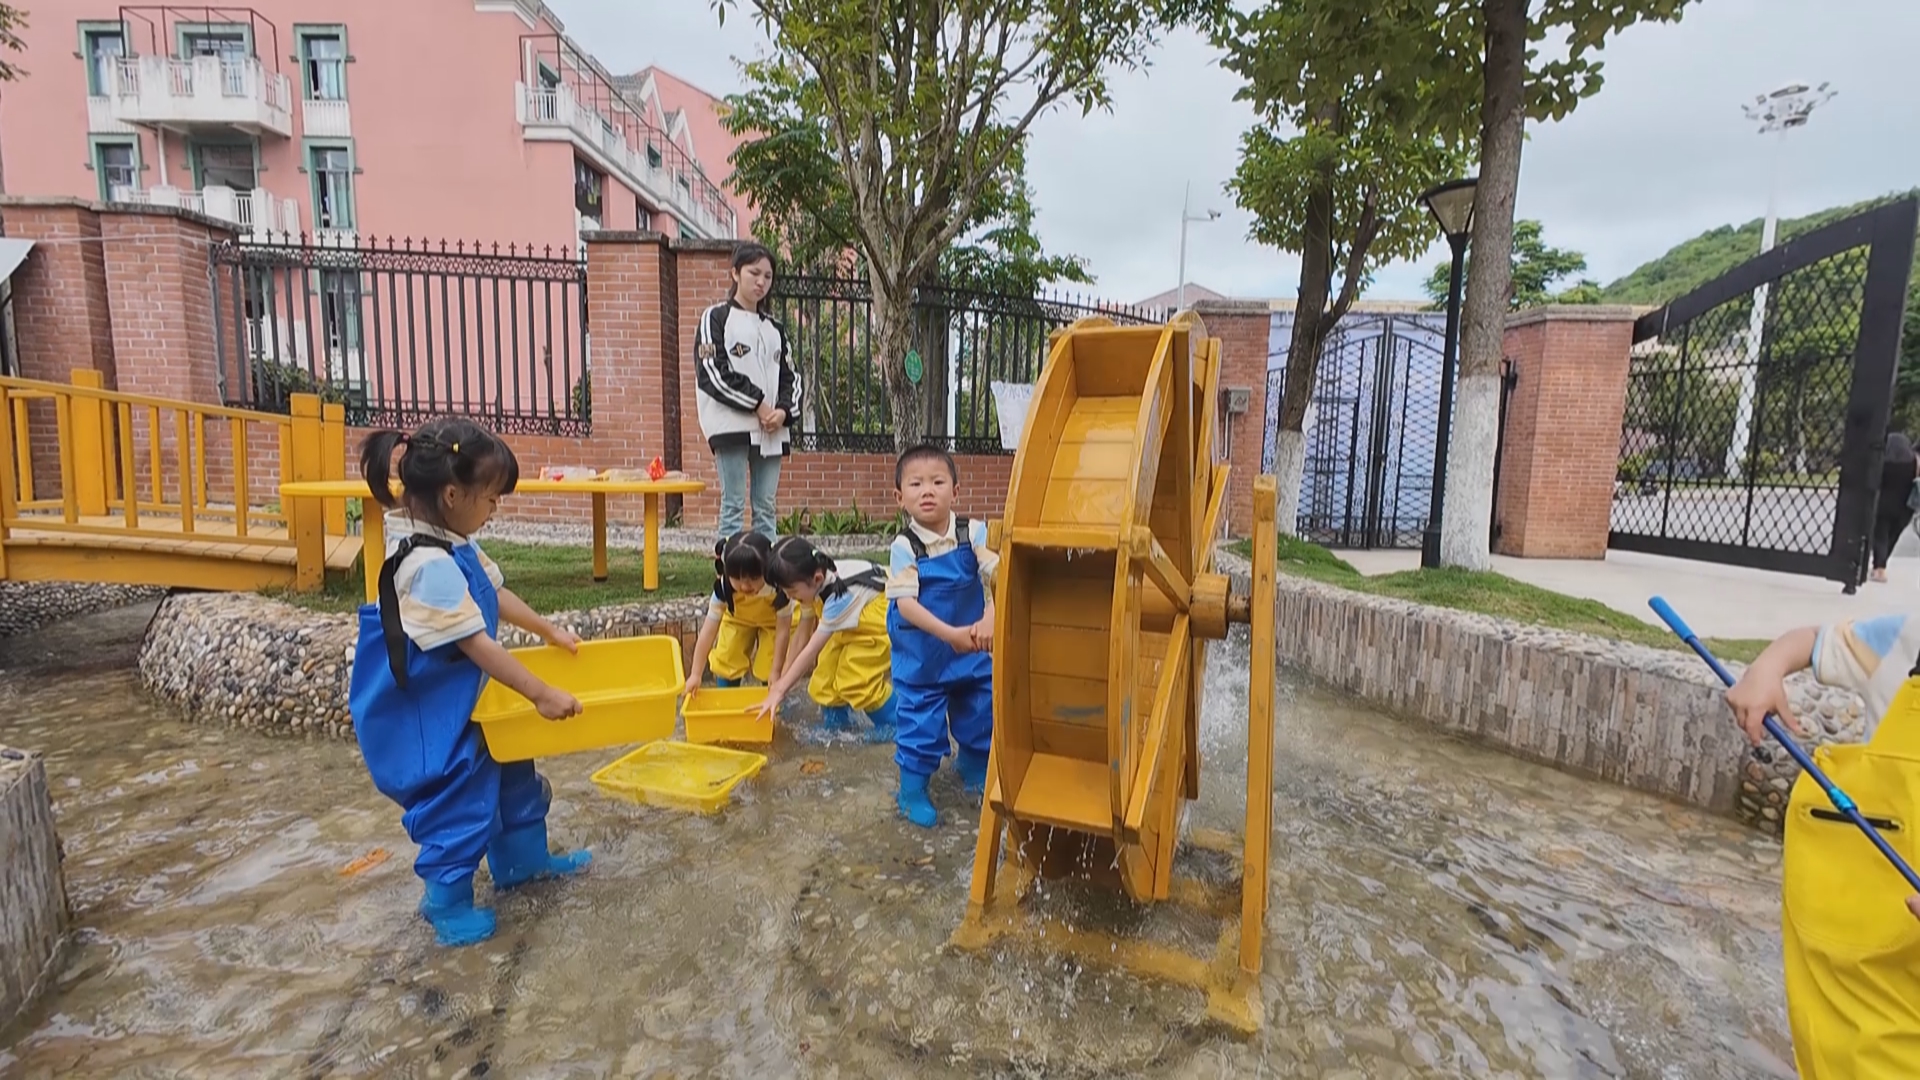 贵州新闻联播丨贵州普惠性幼儿园覆盖率达95%以上 高于全国平均水平